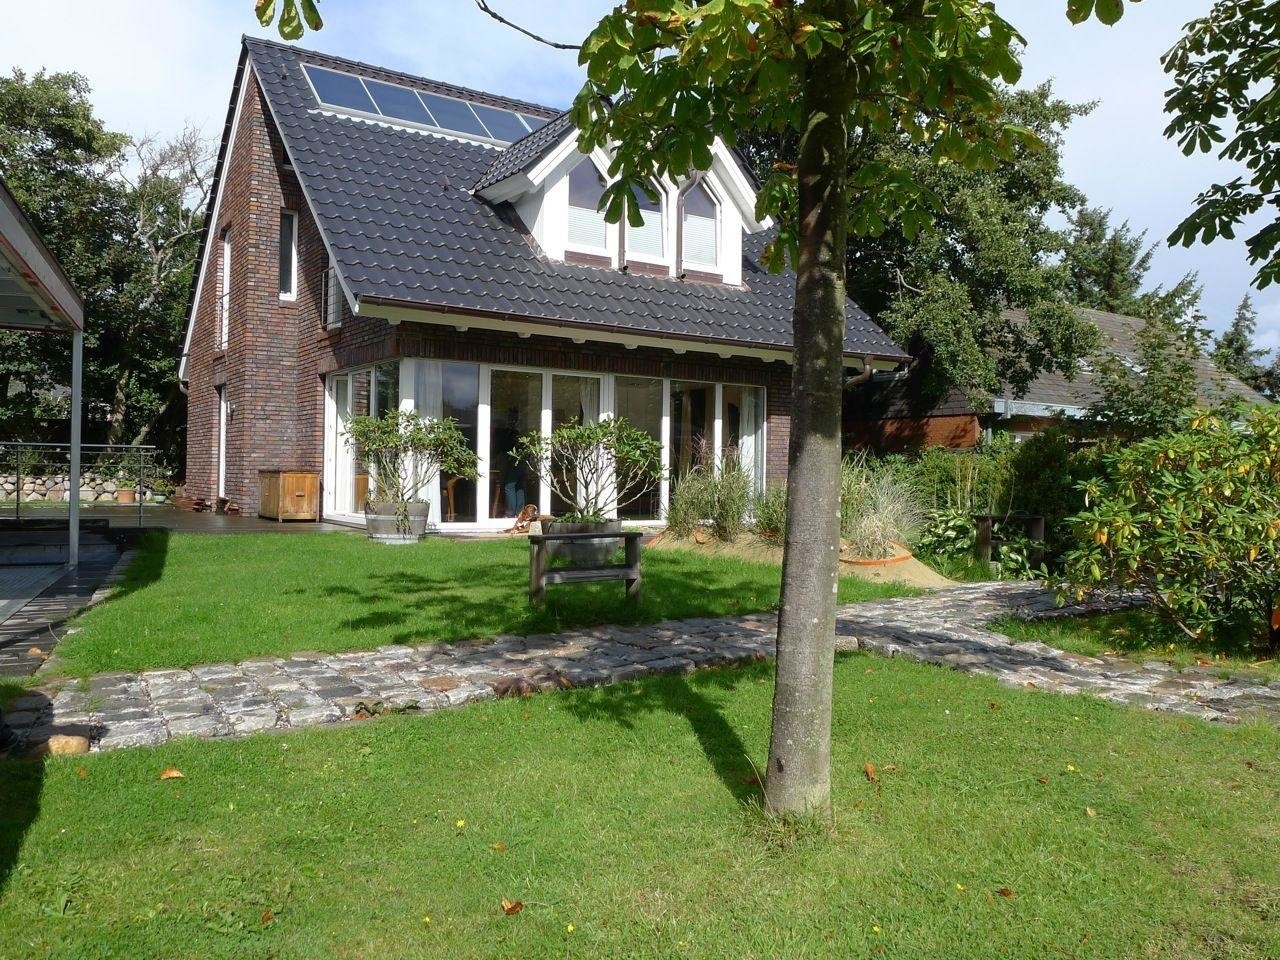 Haus Hookipa, App. 1 Ferienwohnung in Schleswig Holstein